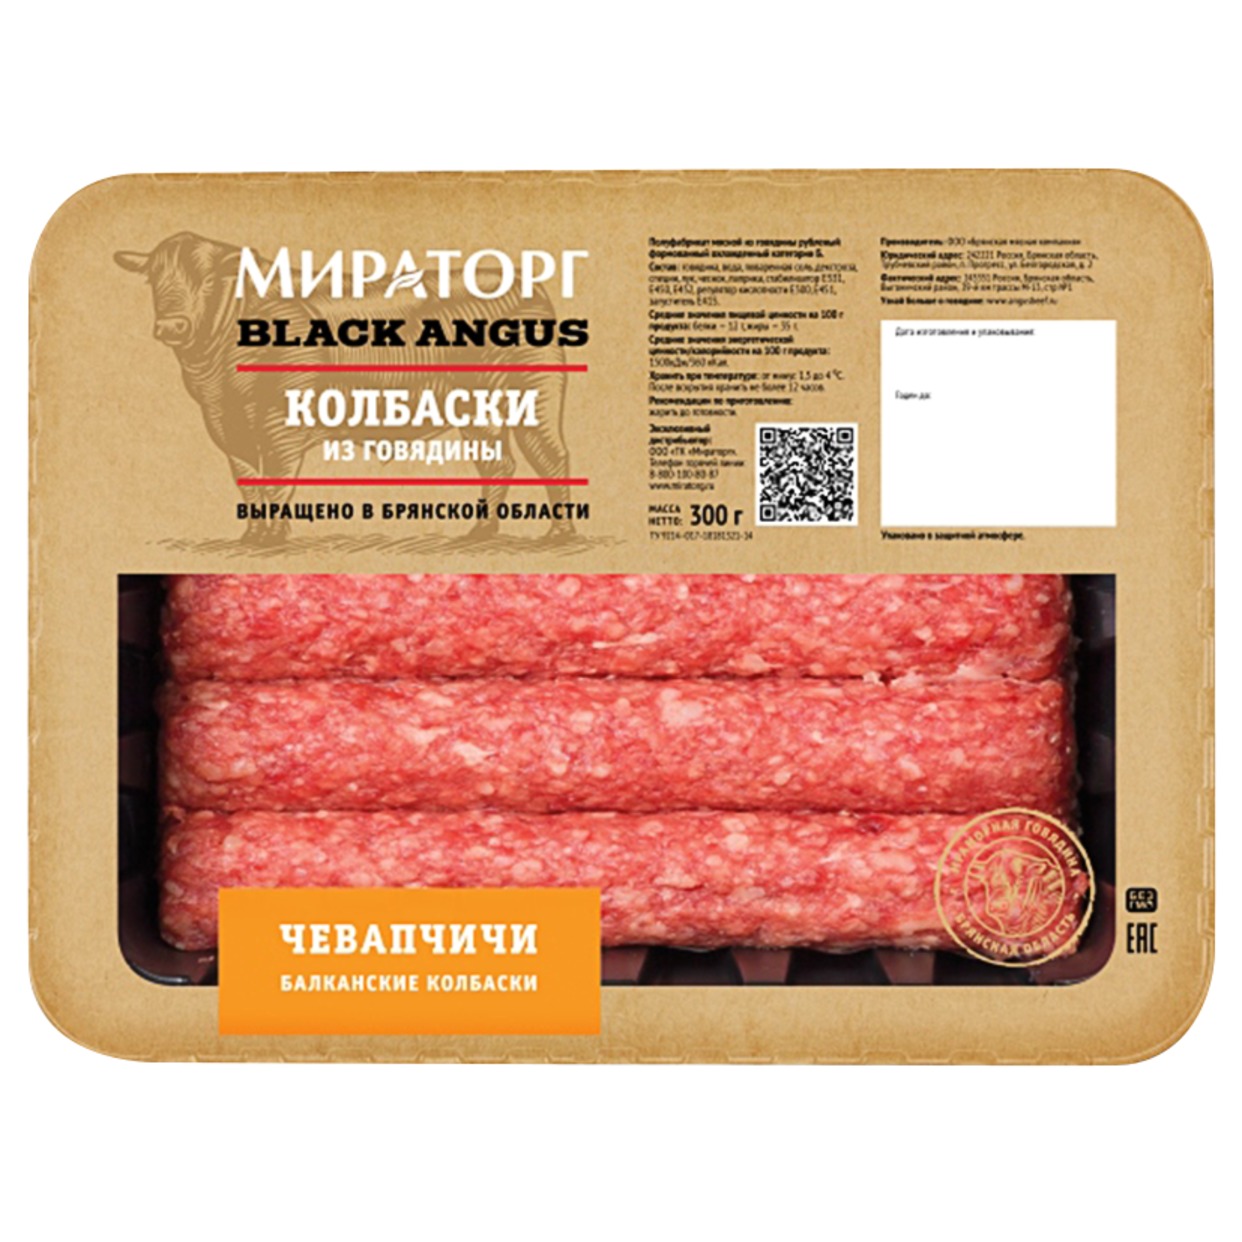 Колбаски Чевапчичи из говядины, Мираторг, 300 г по акции в Пятерочке